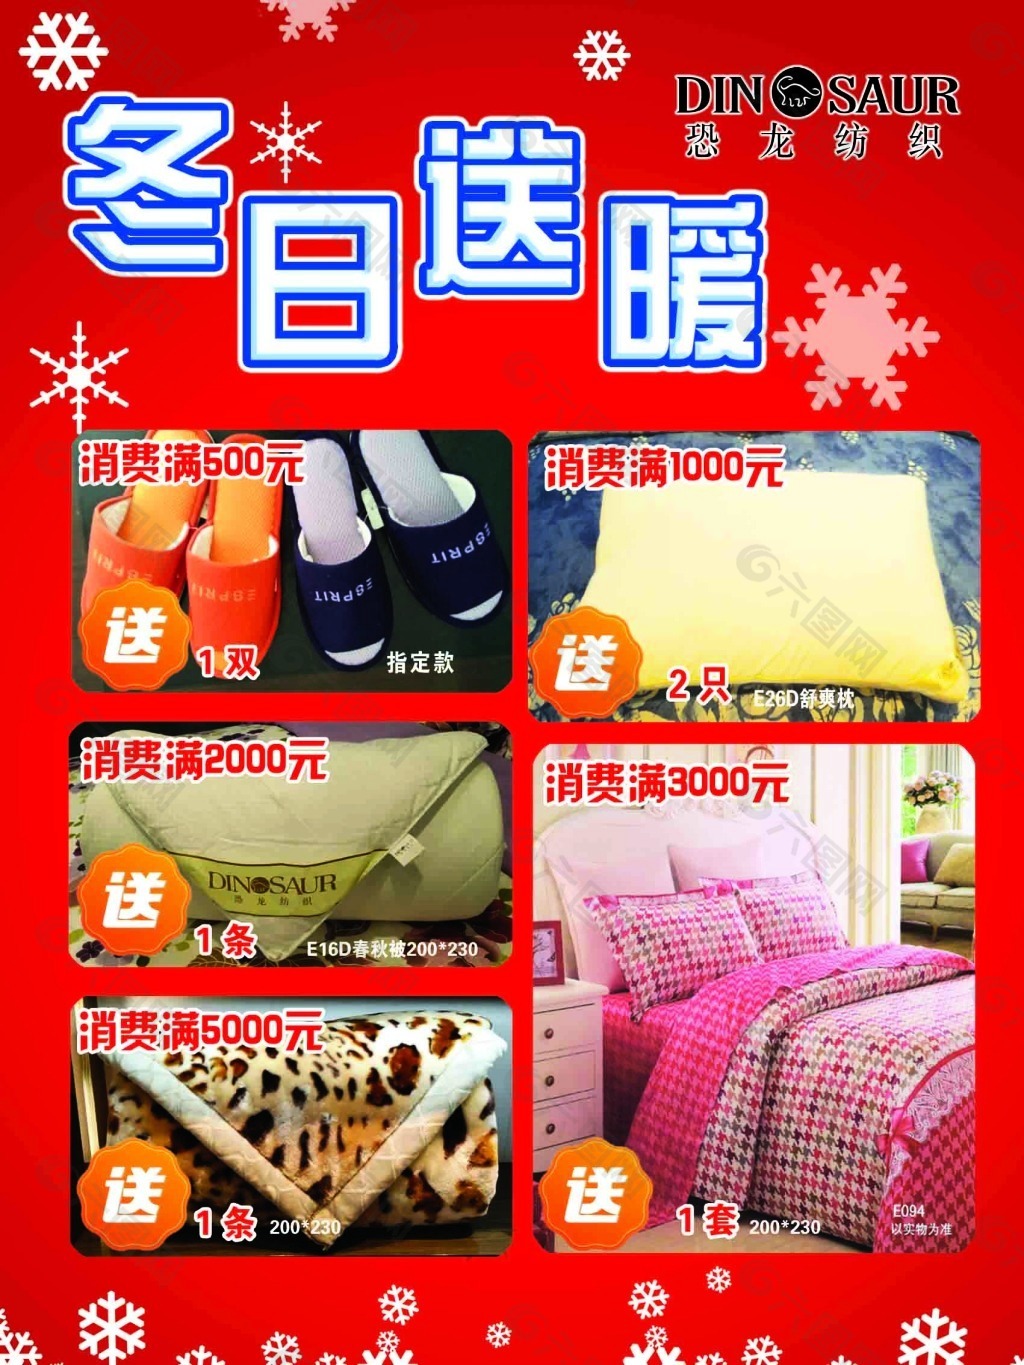 雲林家扶獲一群好友贈232床暖被 適時溫暖服務家庭 | 中華日報 | LINE TODAY